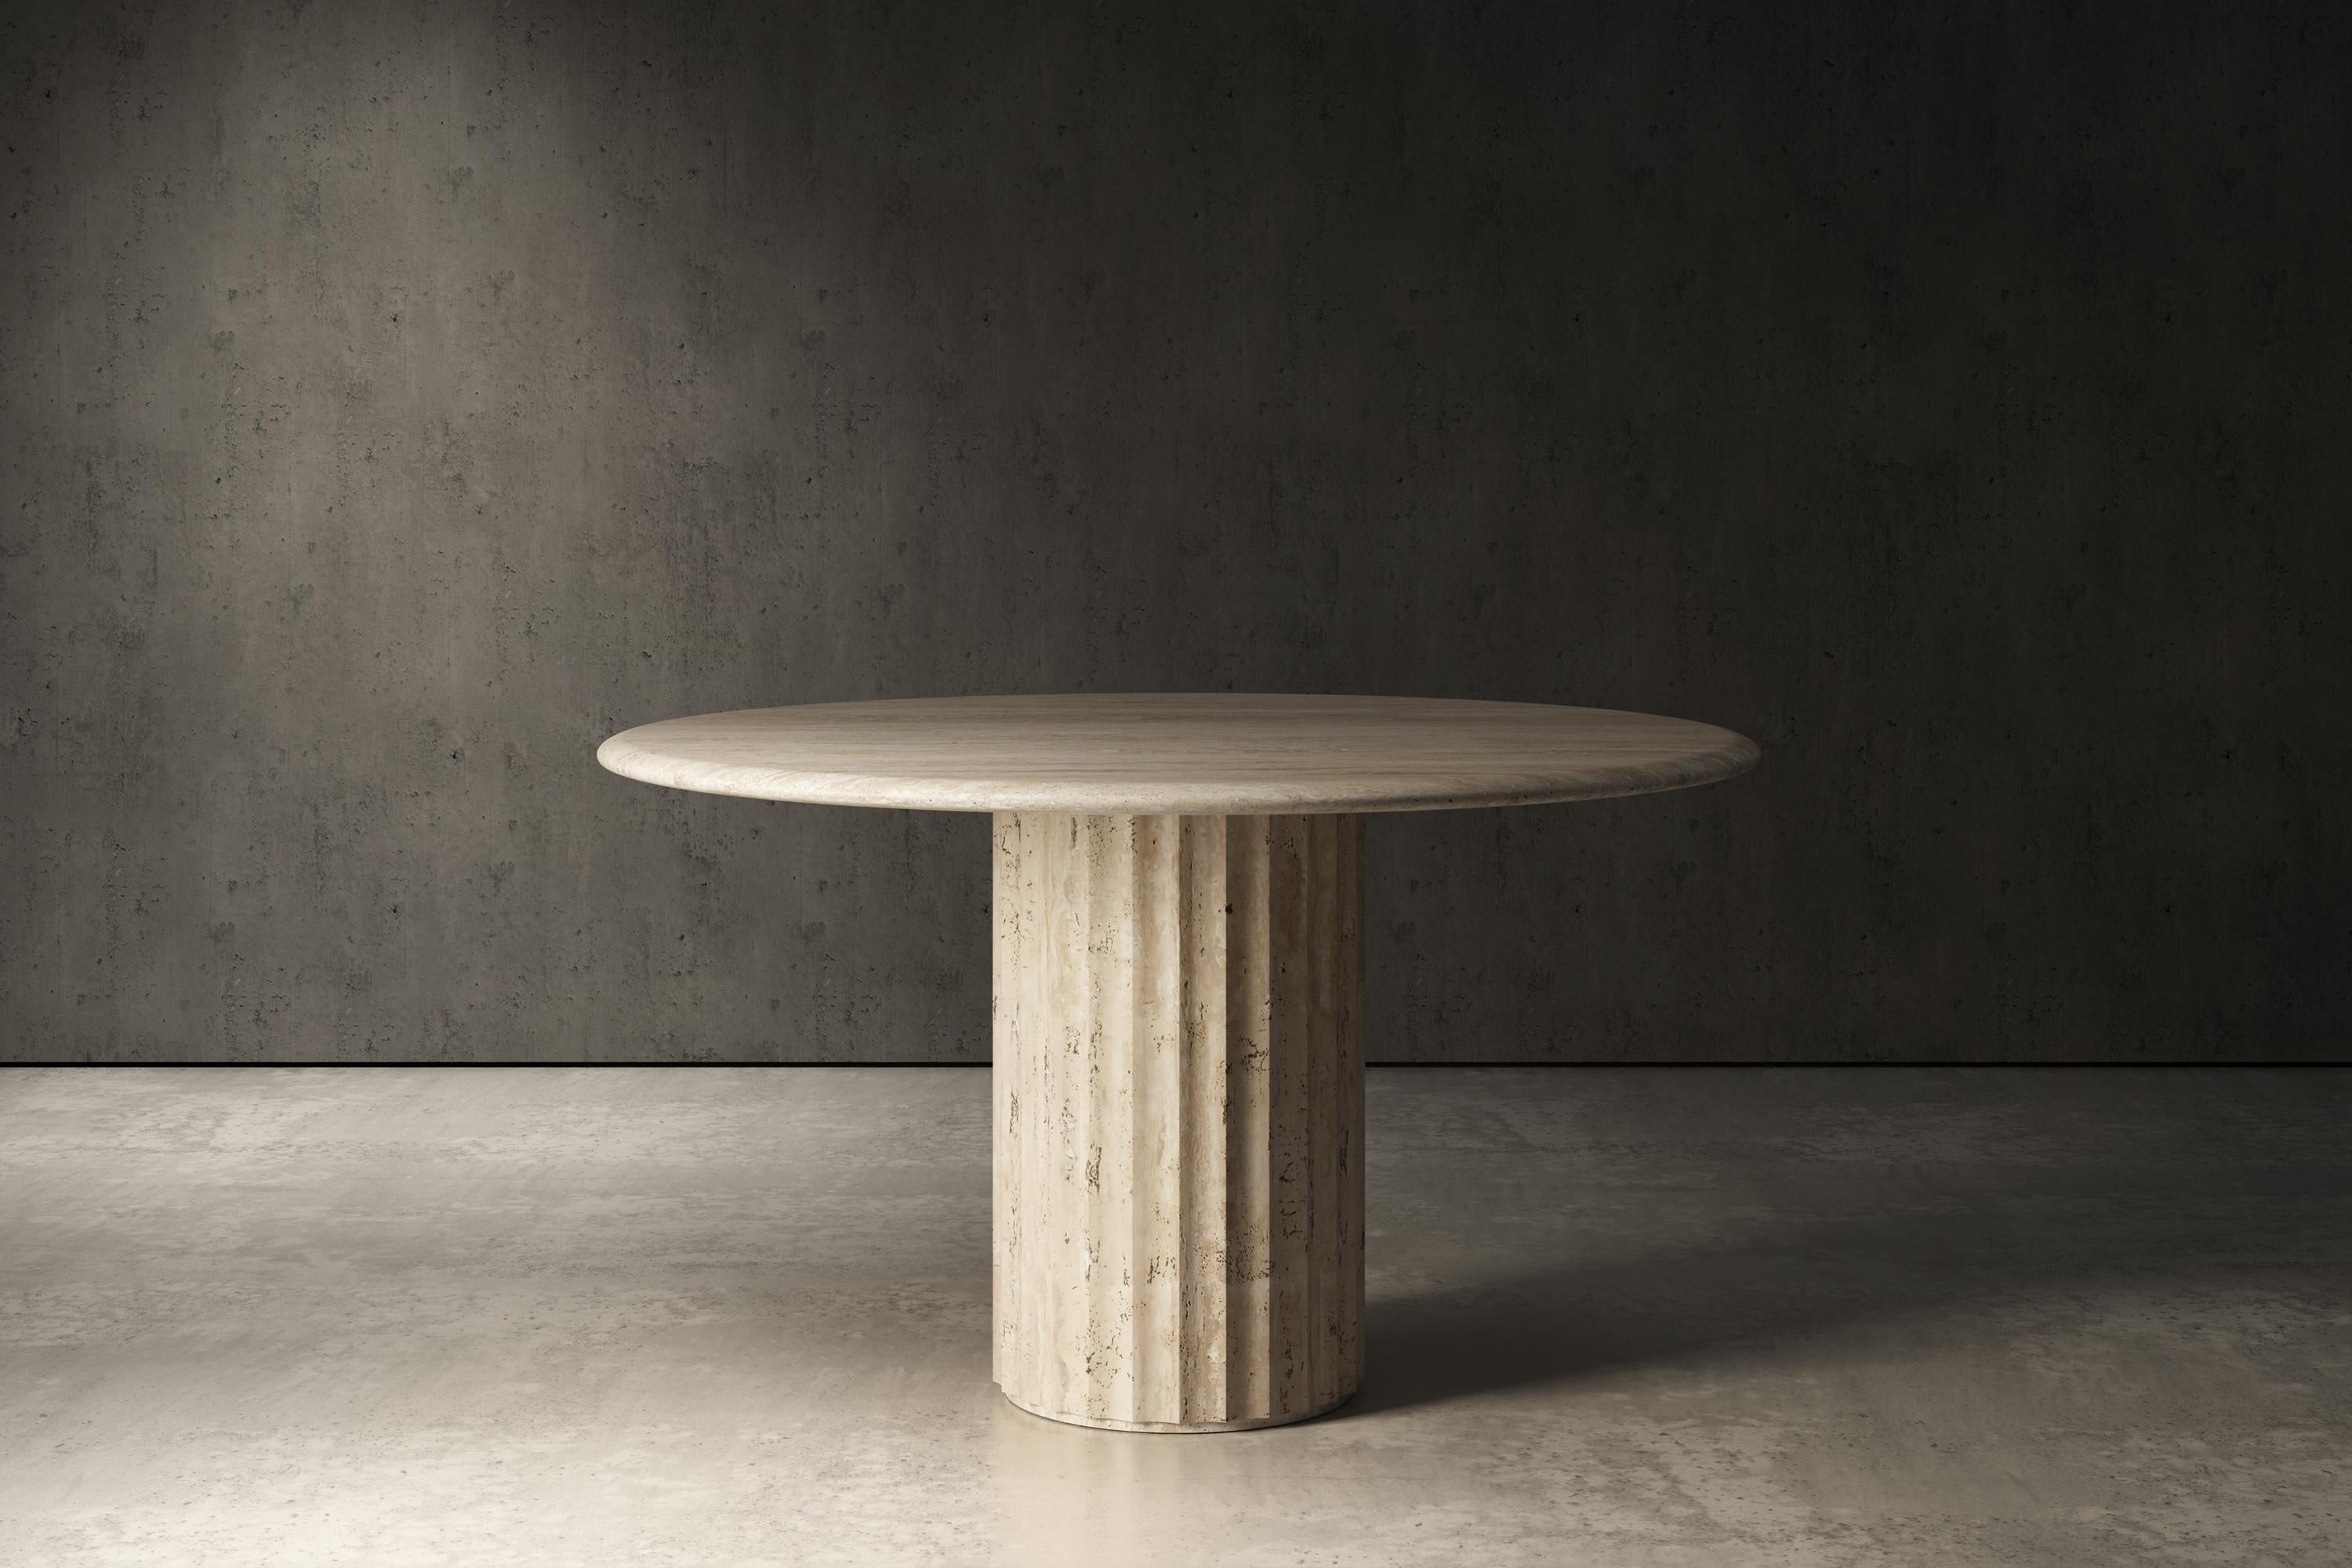 Der runde Dorigo-Tisch kann in verschiedenen Größen und Steinen angepasst werden.